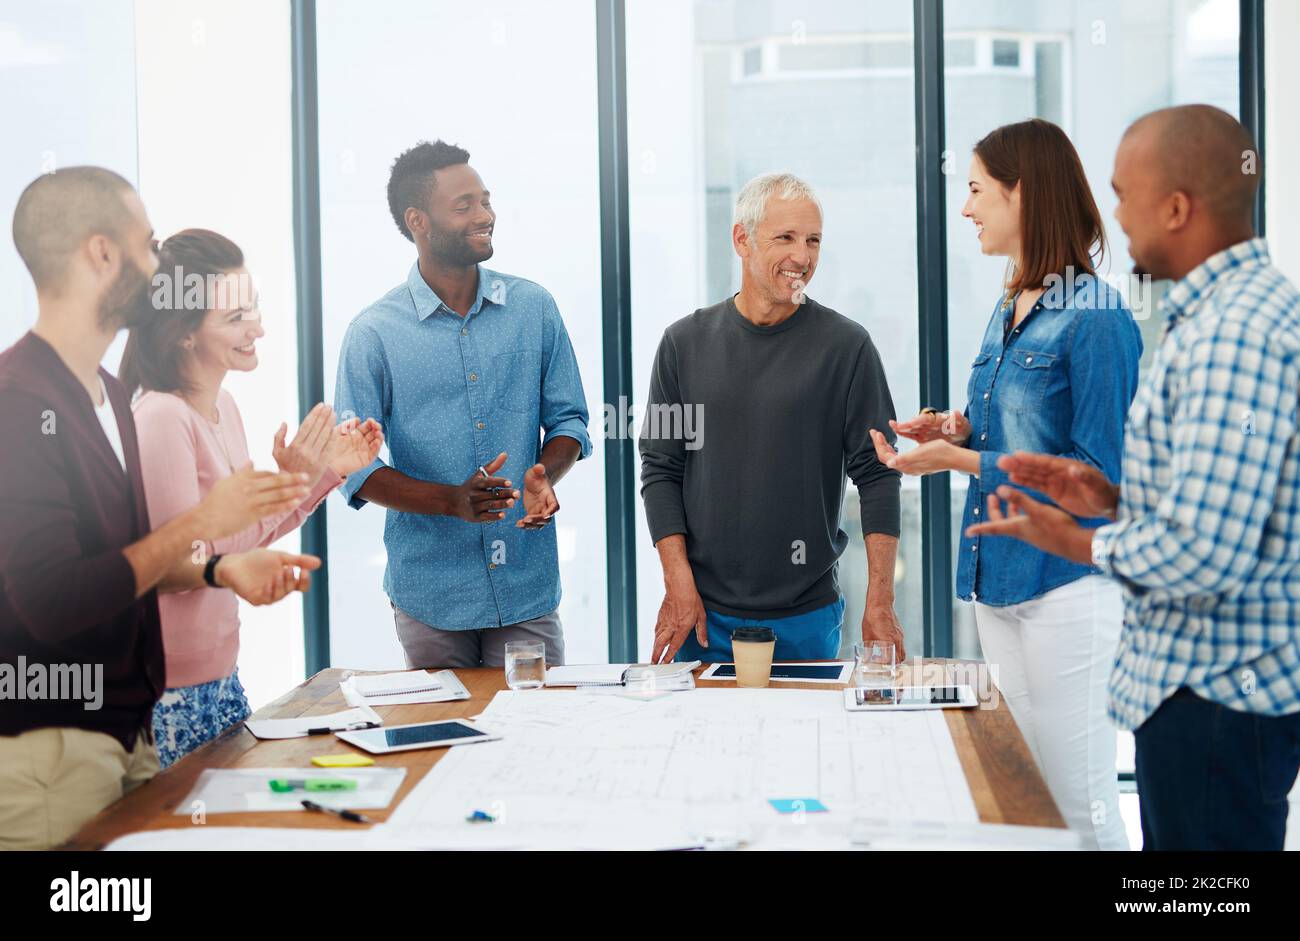 Arbeiten Sie zusammen, um Ihre Träume zu entwerfen. Ausgeschnittene Aufnahme einer Gruppe von Architekten im Sitzungssaal. Stockfoto